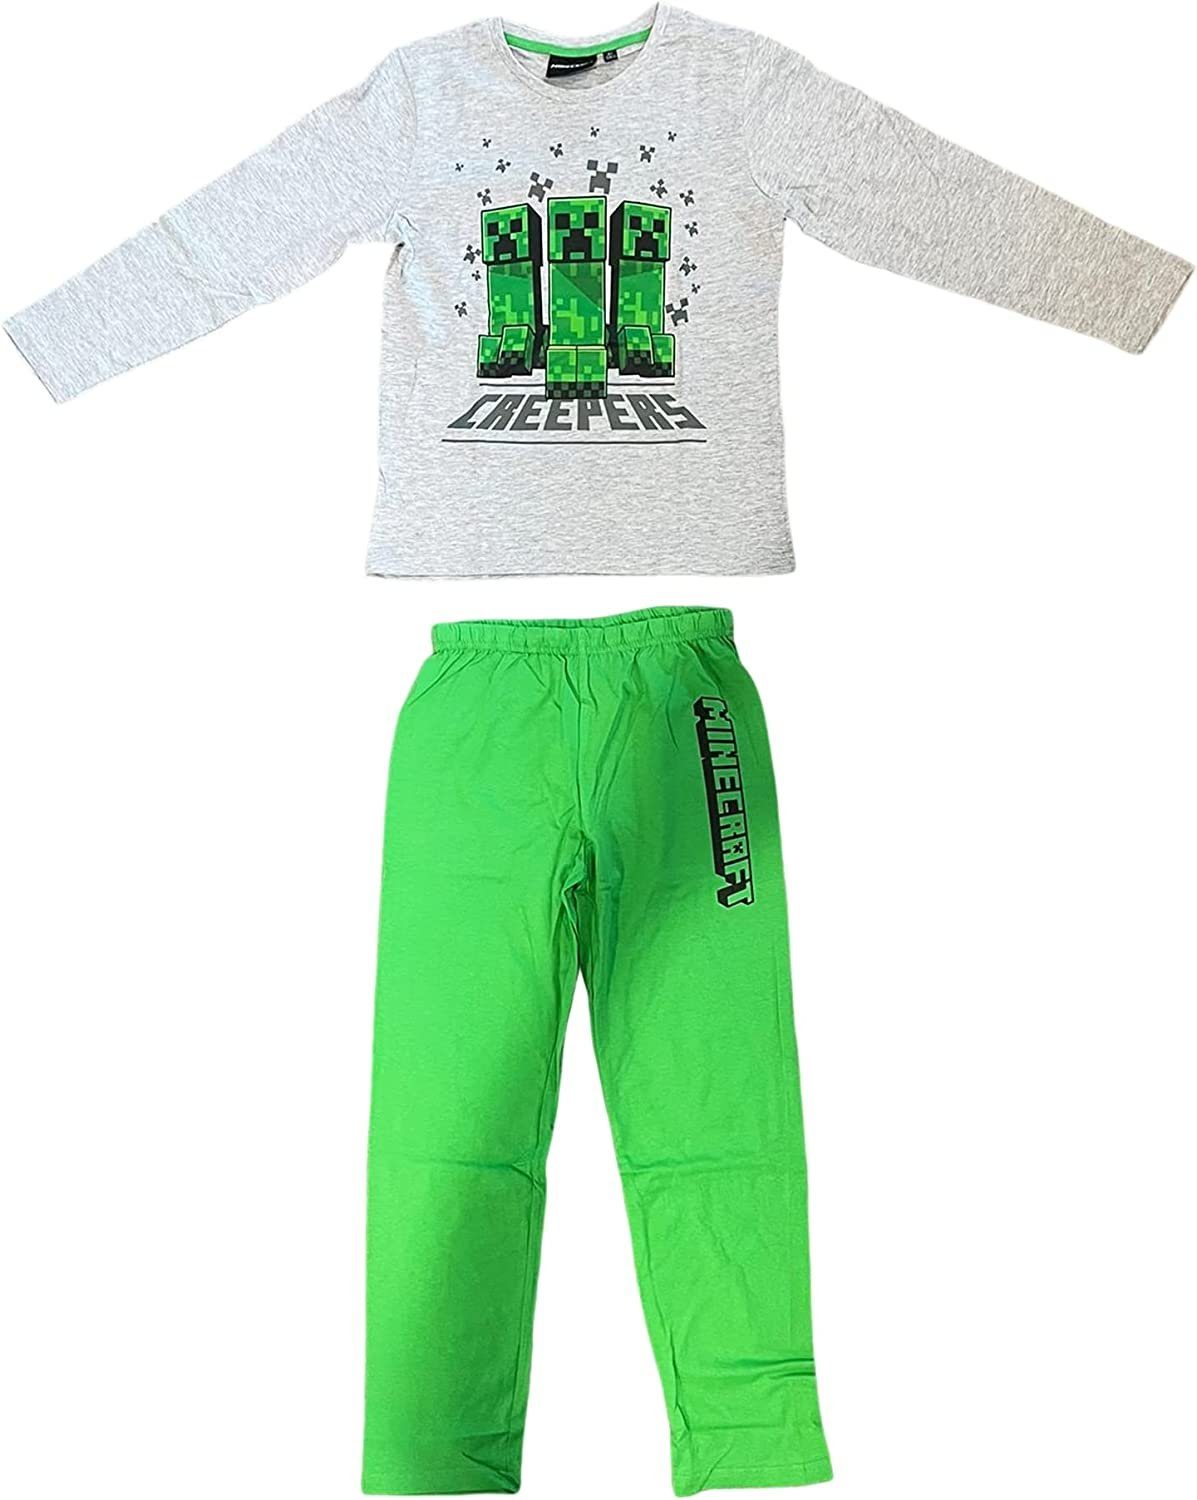 Zocker Kinder Schlafanzug - Mädchen Langer Gamer Pyjama 152 + Minecraft Jungen 128